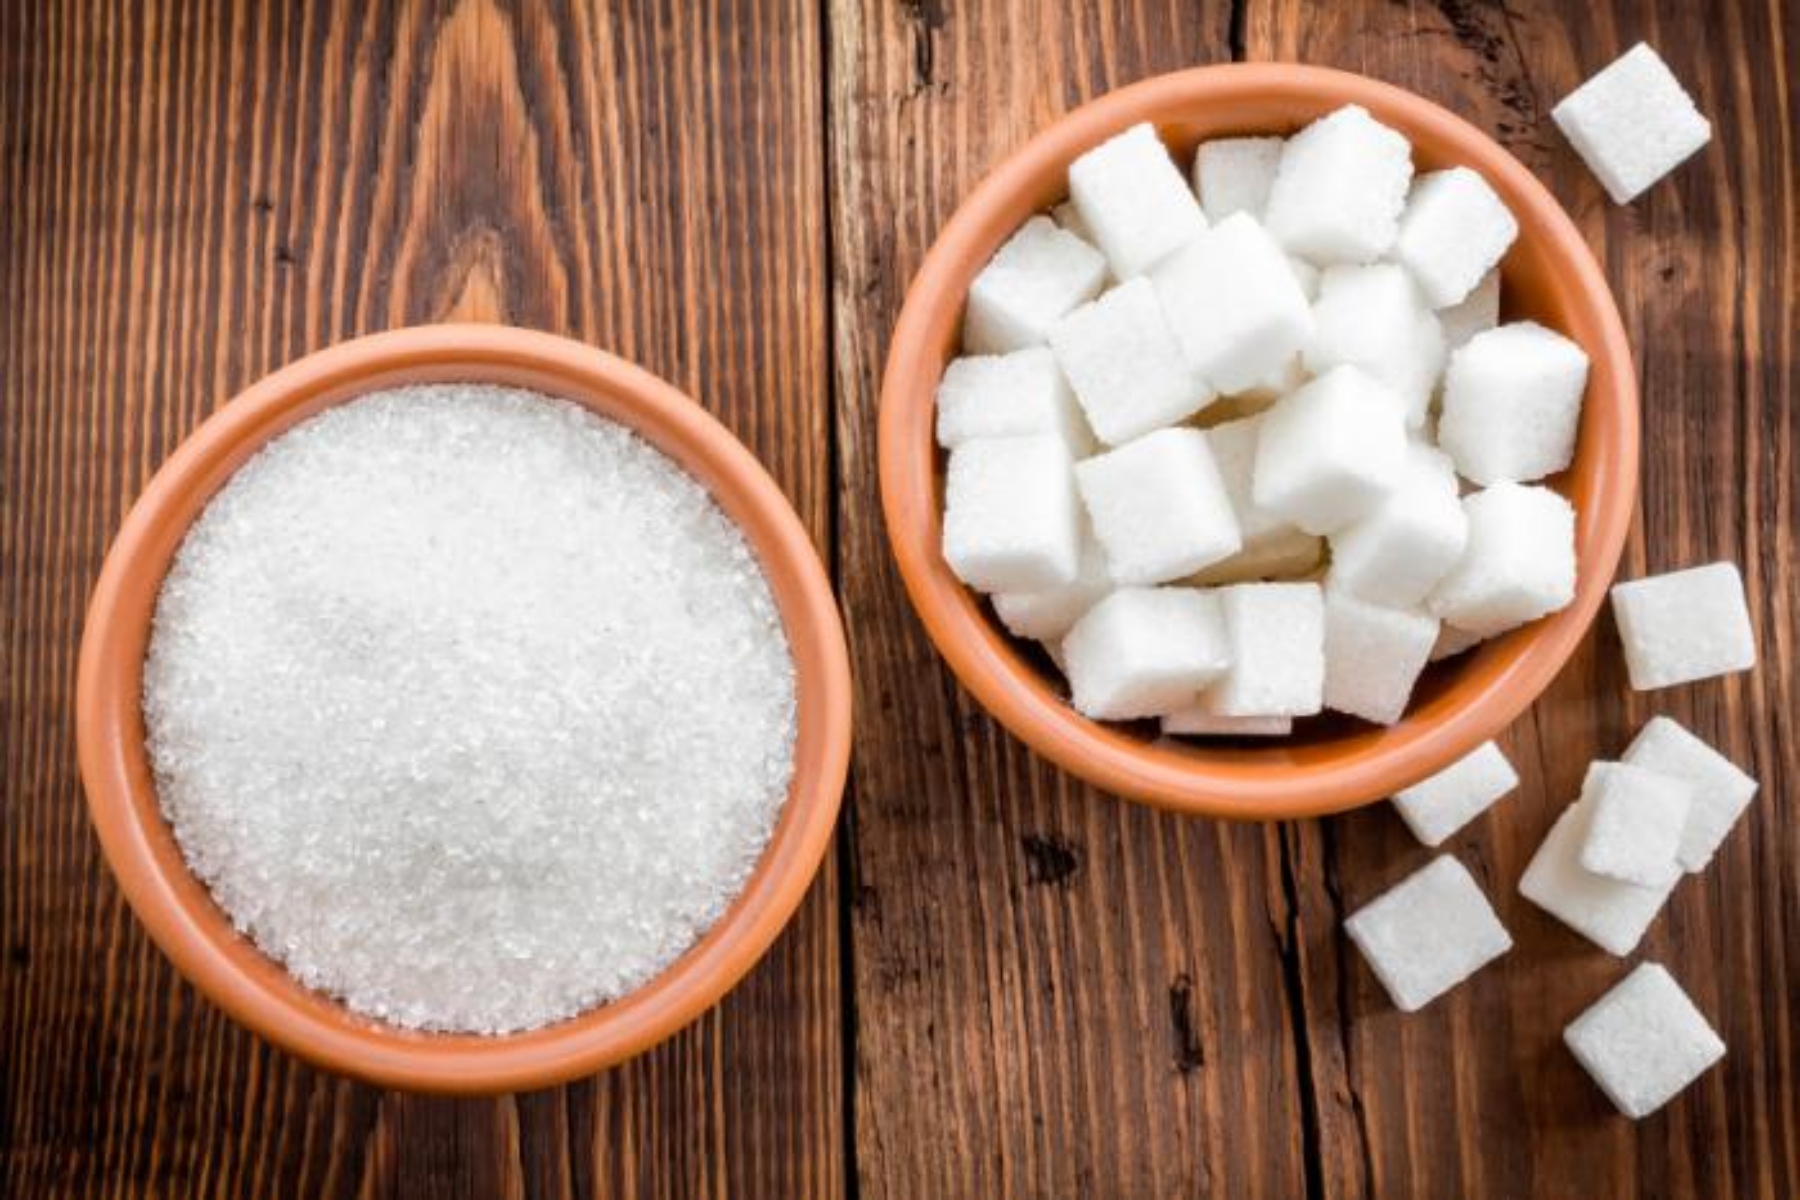 Νέα υγείας καρδιά: Ζάχαρη ή αλάτι; Τι επηρεάζει περισσότερο την καρδιά;